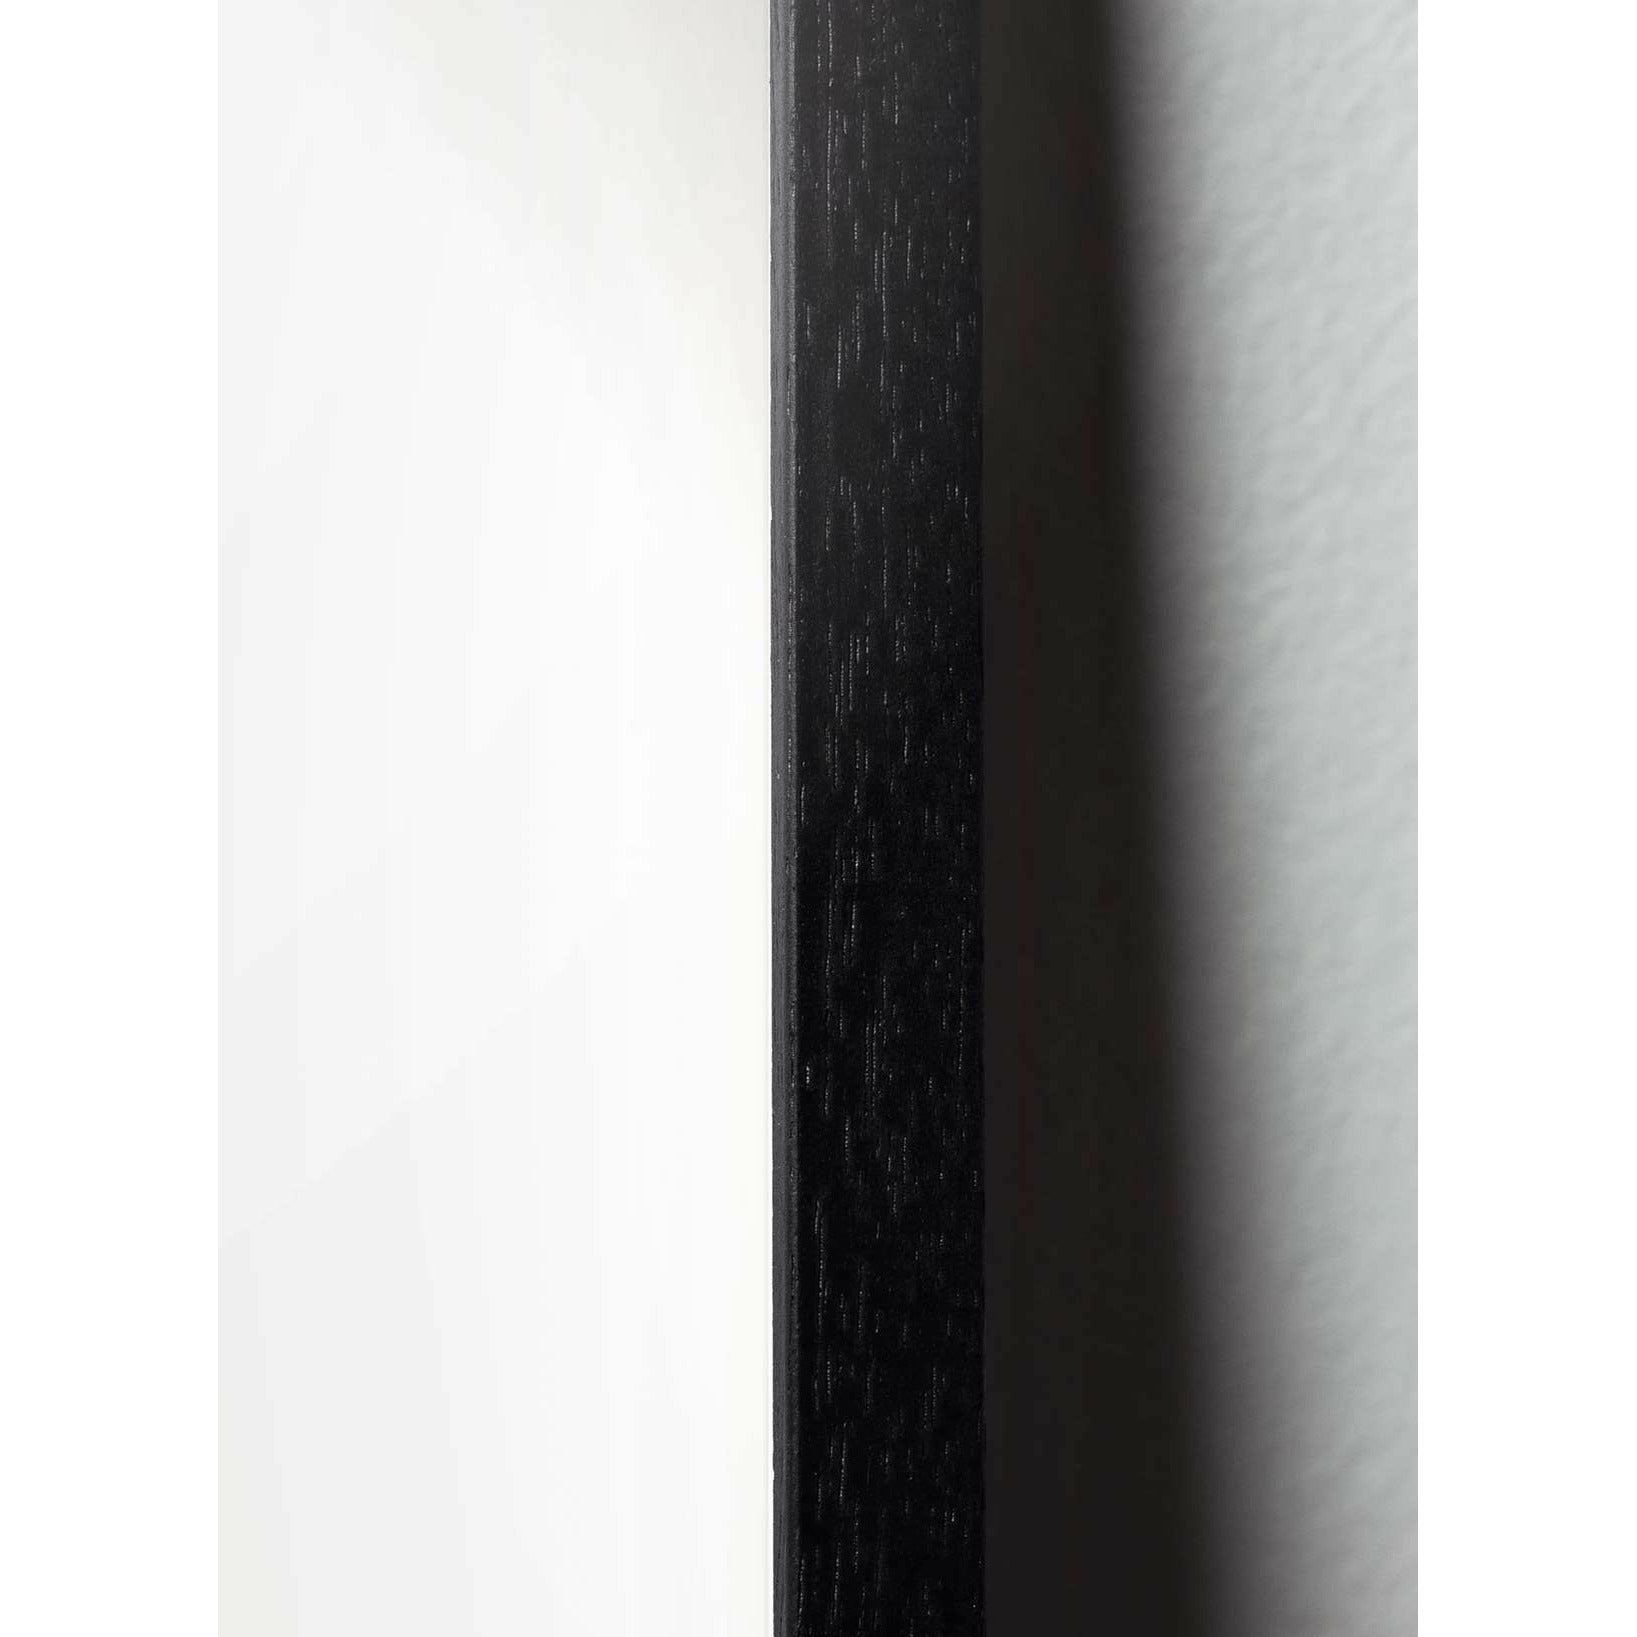 Pomysły Classic Plakat, rama w czarnym lakierowanym drewnie 30x40 cm, jasnoniebieskie tło